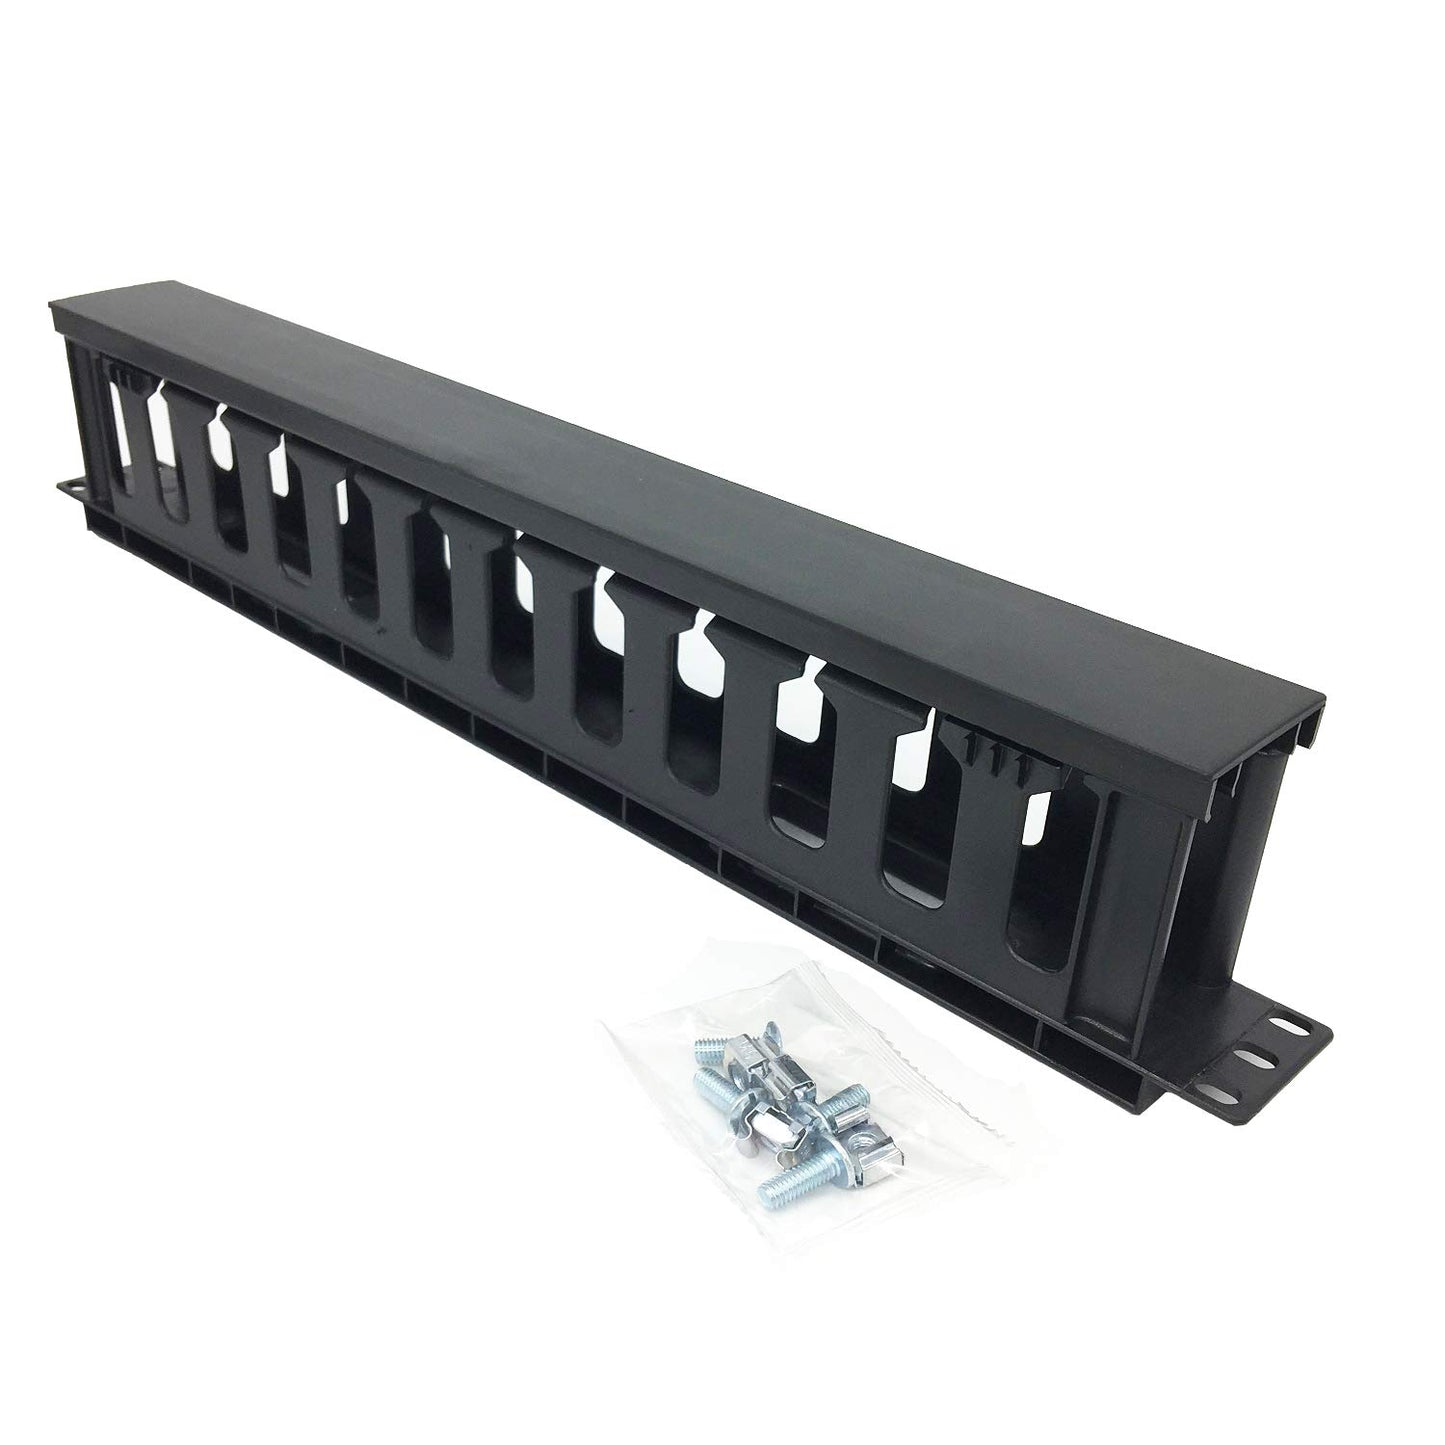 5 Pack of 1U Blank Panel - Metal Rack Mount Filler Panel for 19in Server Rack Cabinet or Enclosure, Black (1UBP5PC)